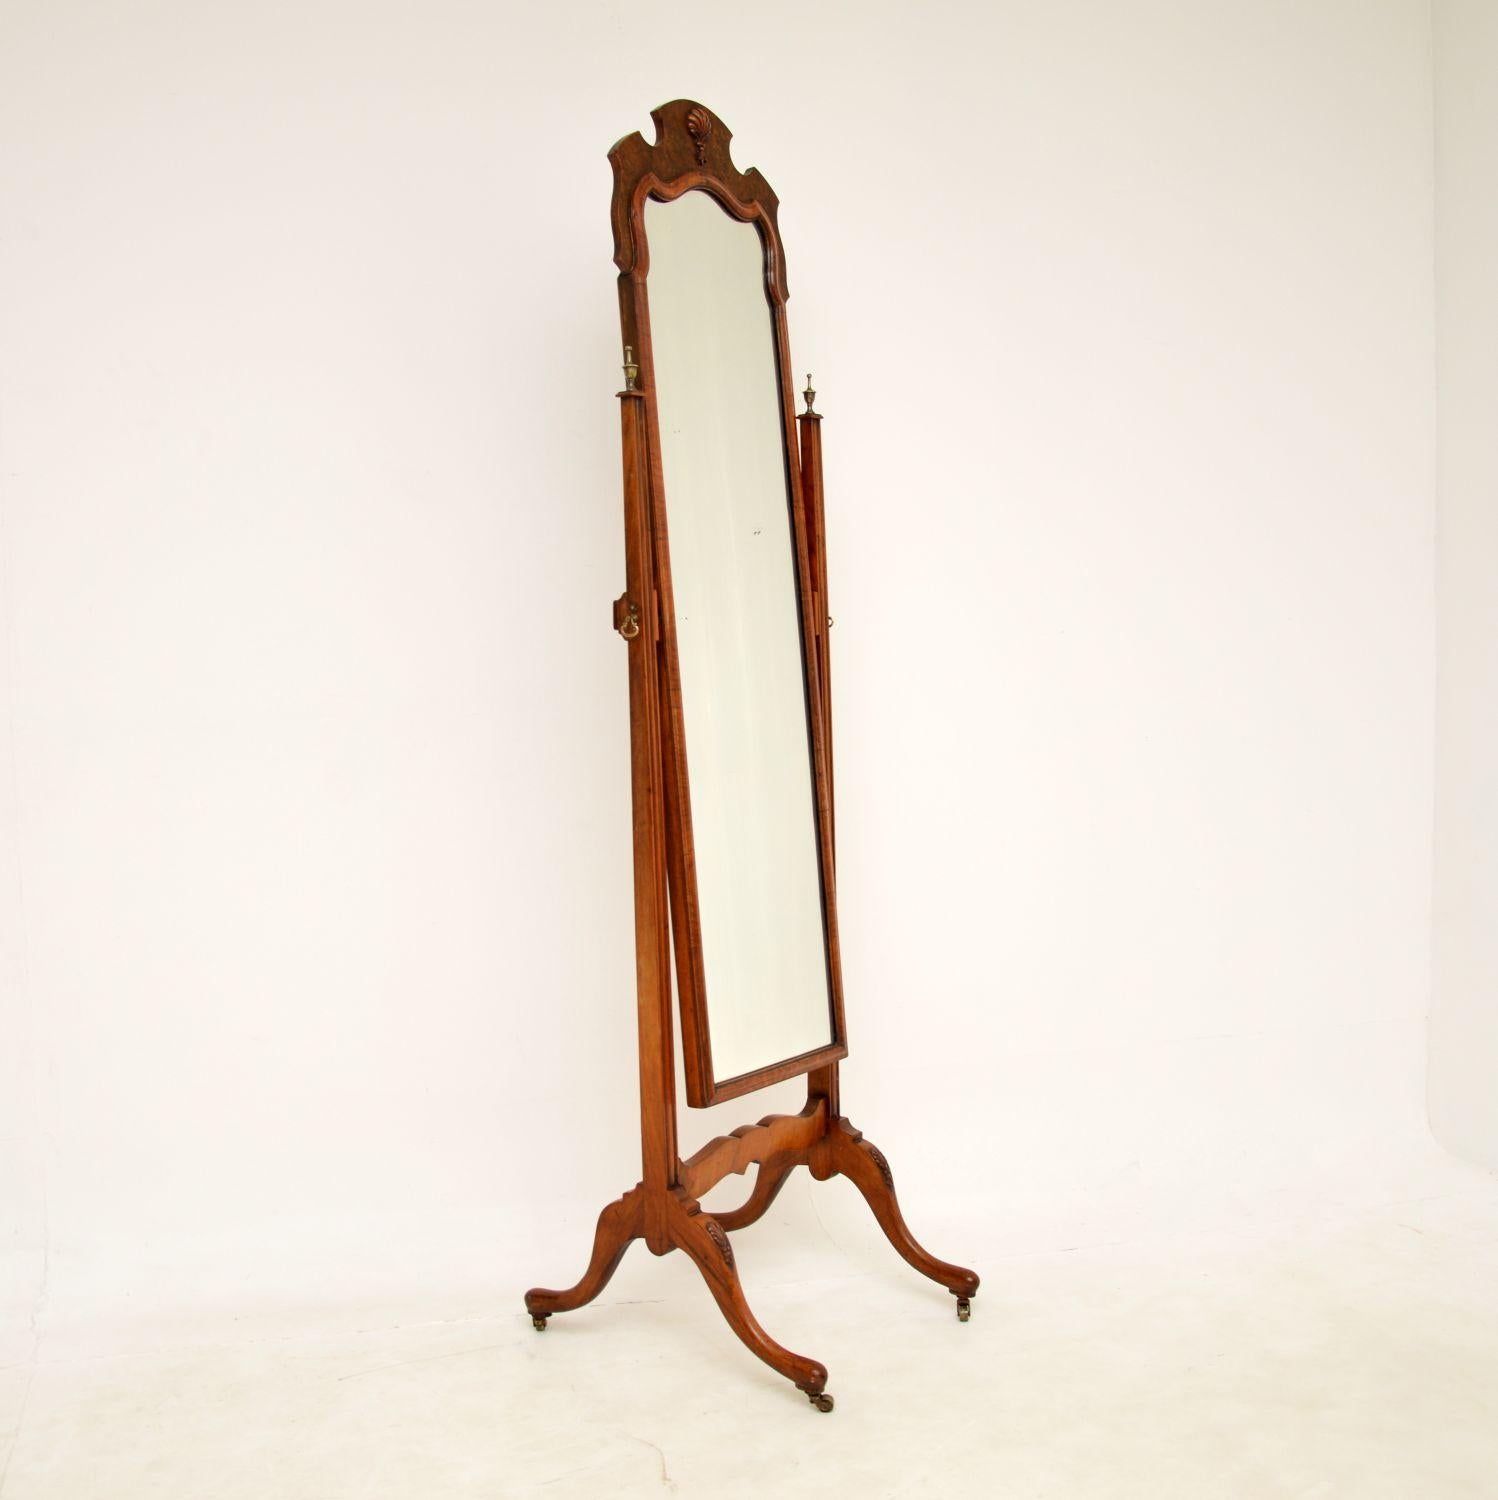 Ein schöner antiker freistehender Chevalspiegel aus Wurzelnussholz. Sie wurde in England hergestellt und stammt aus der Zeit um 1890-1900.

Er ist von hervorragender Qualität und hat eine schöne Größe, recht schlank und elegant. Die Maserung des